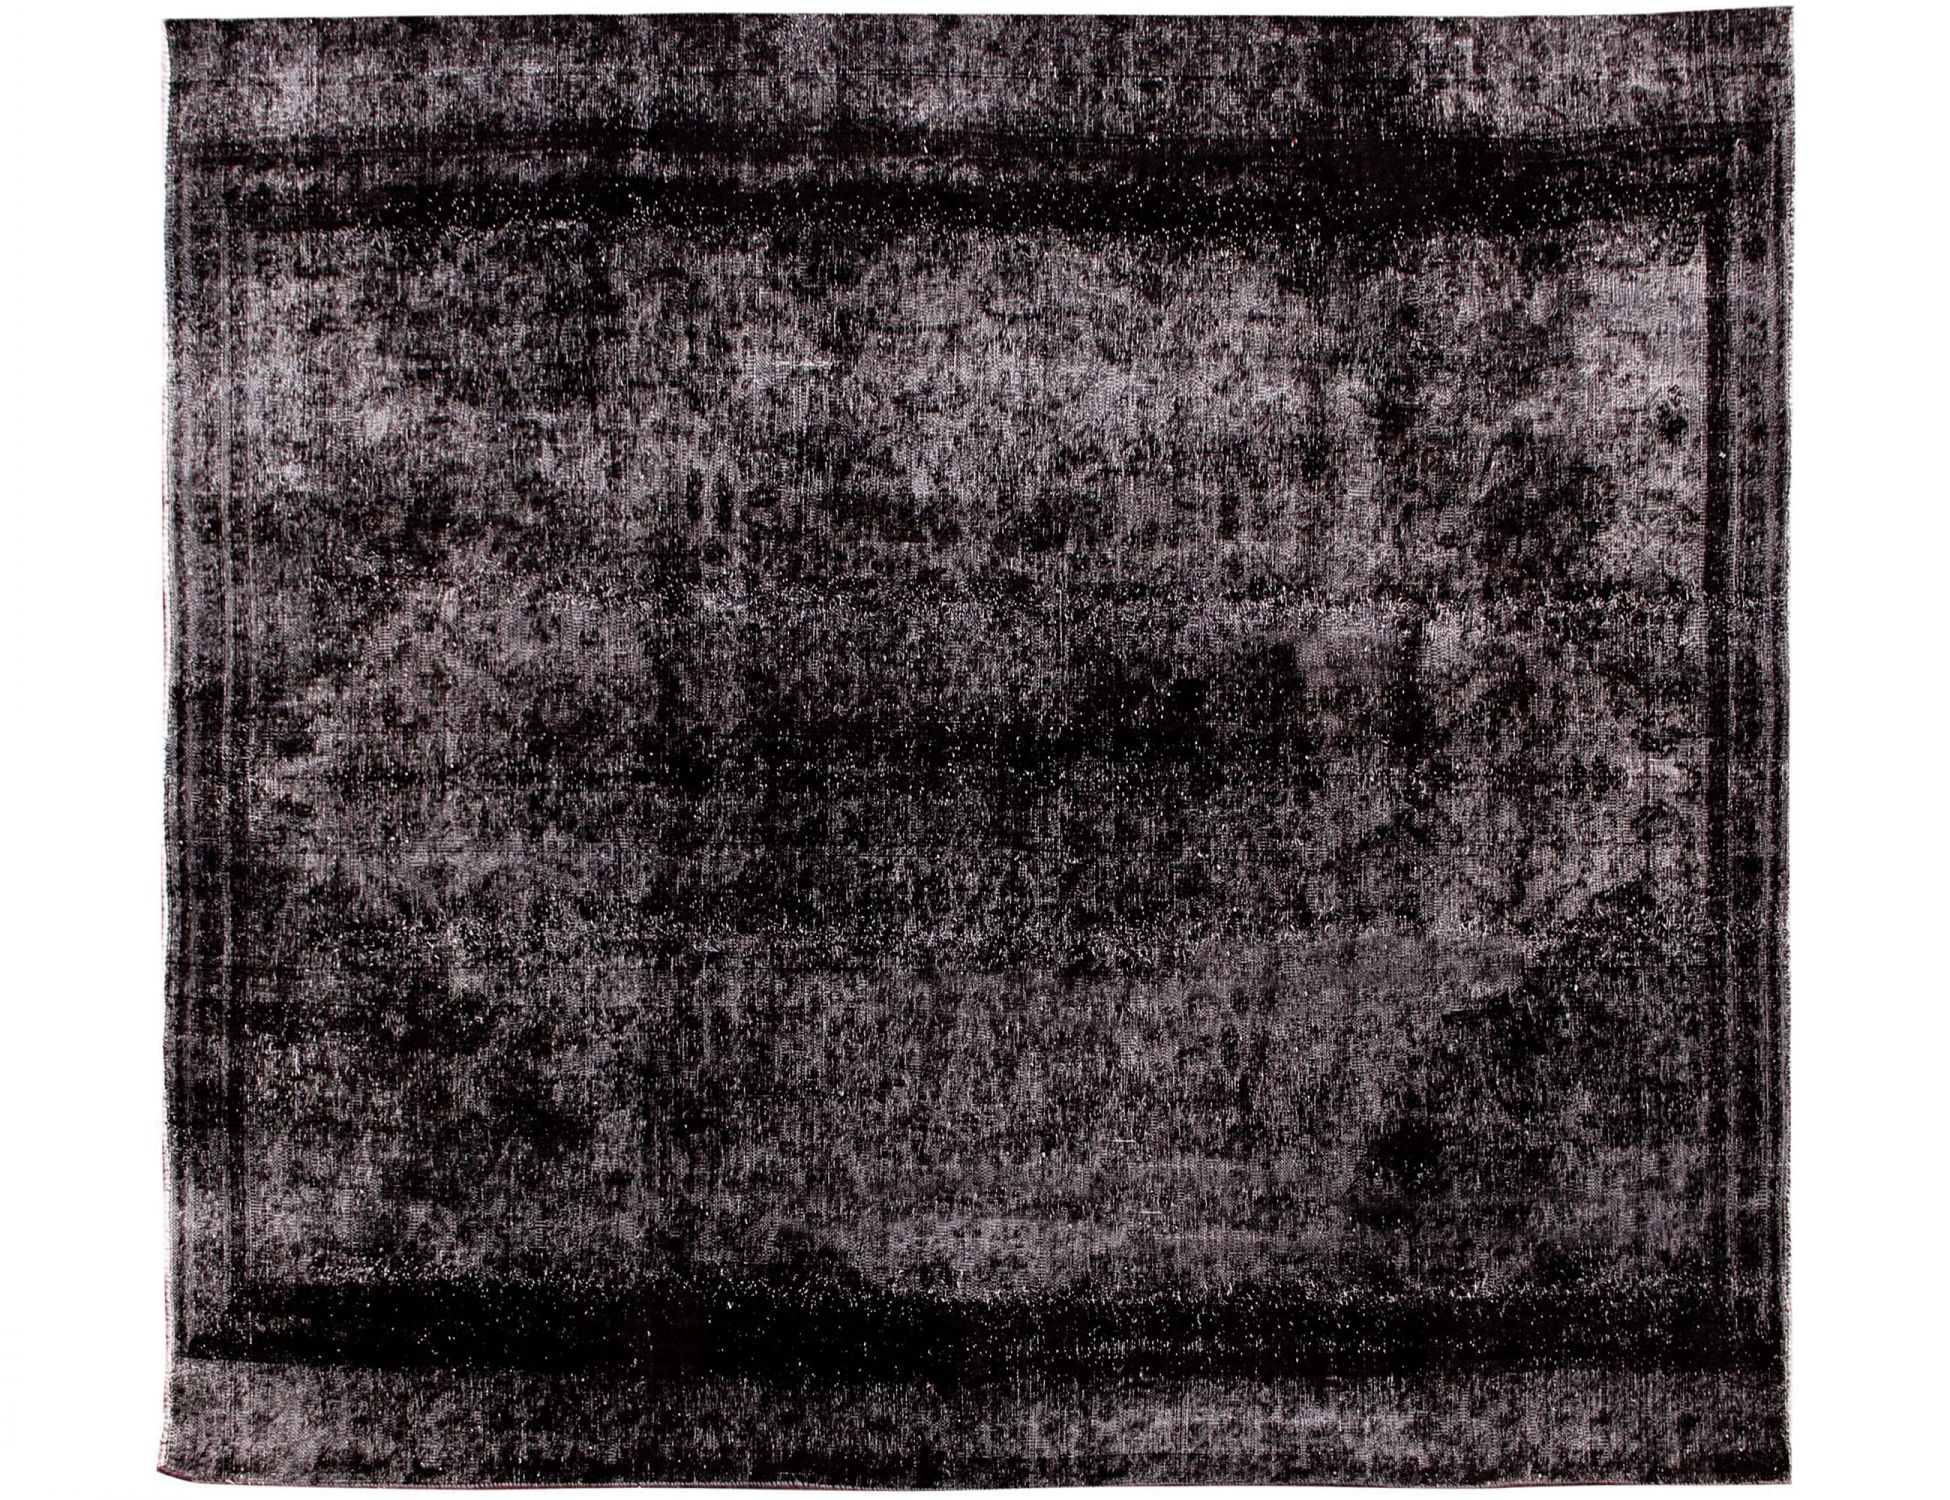 Persian Vintage Carpet  black <br/>300 x 260 cm